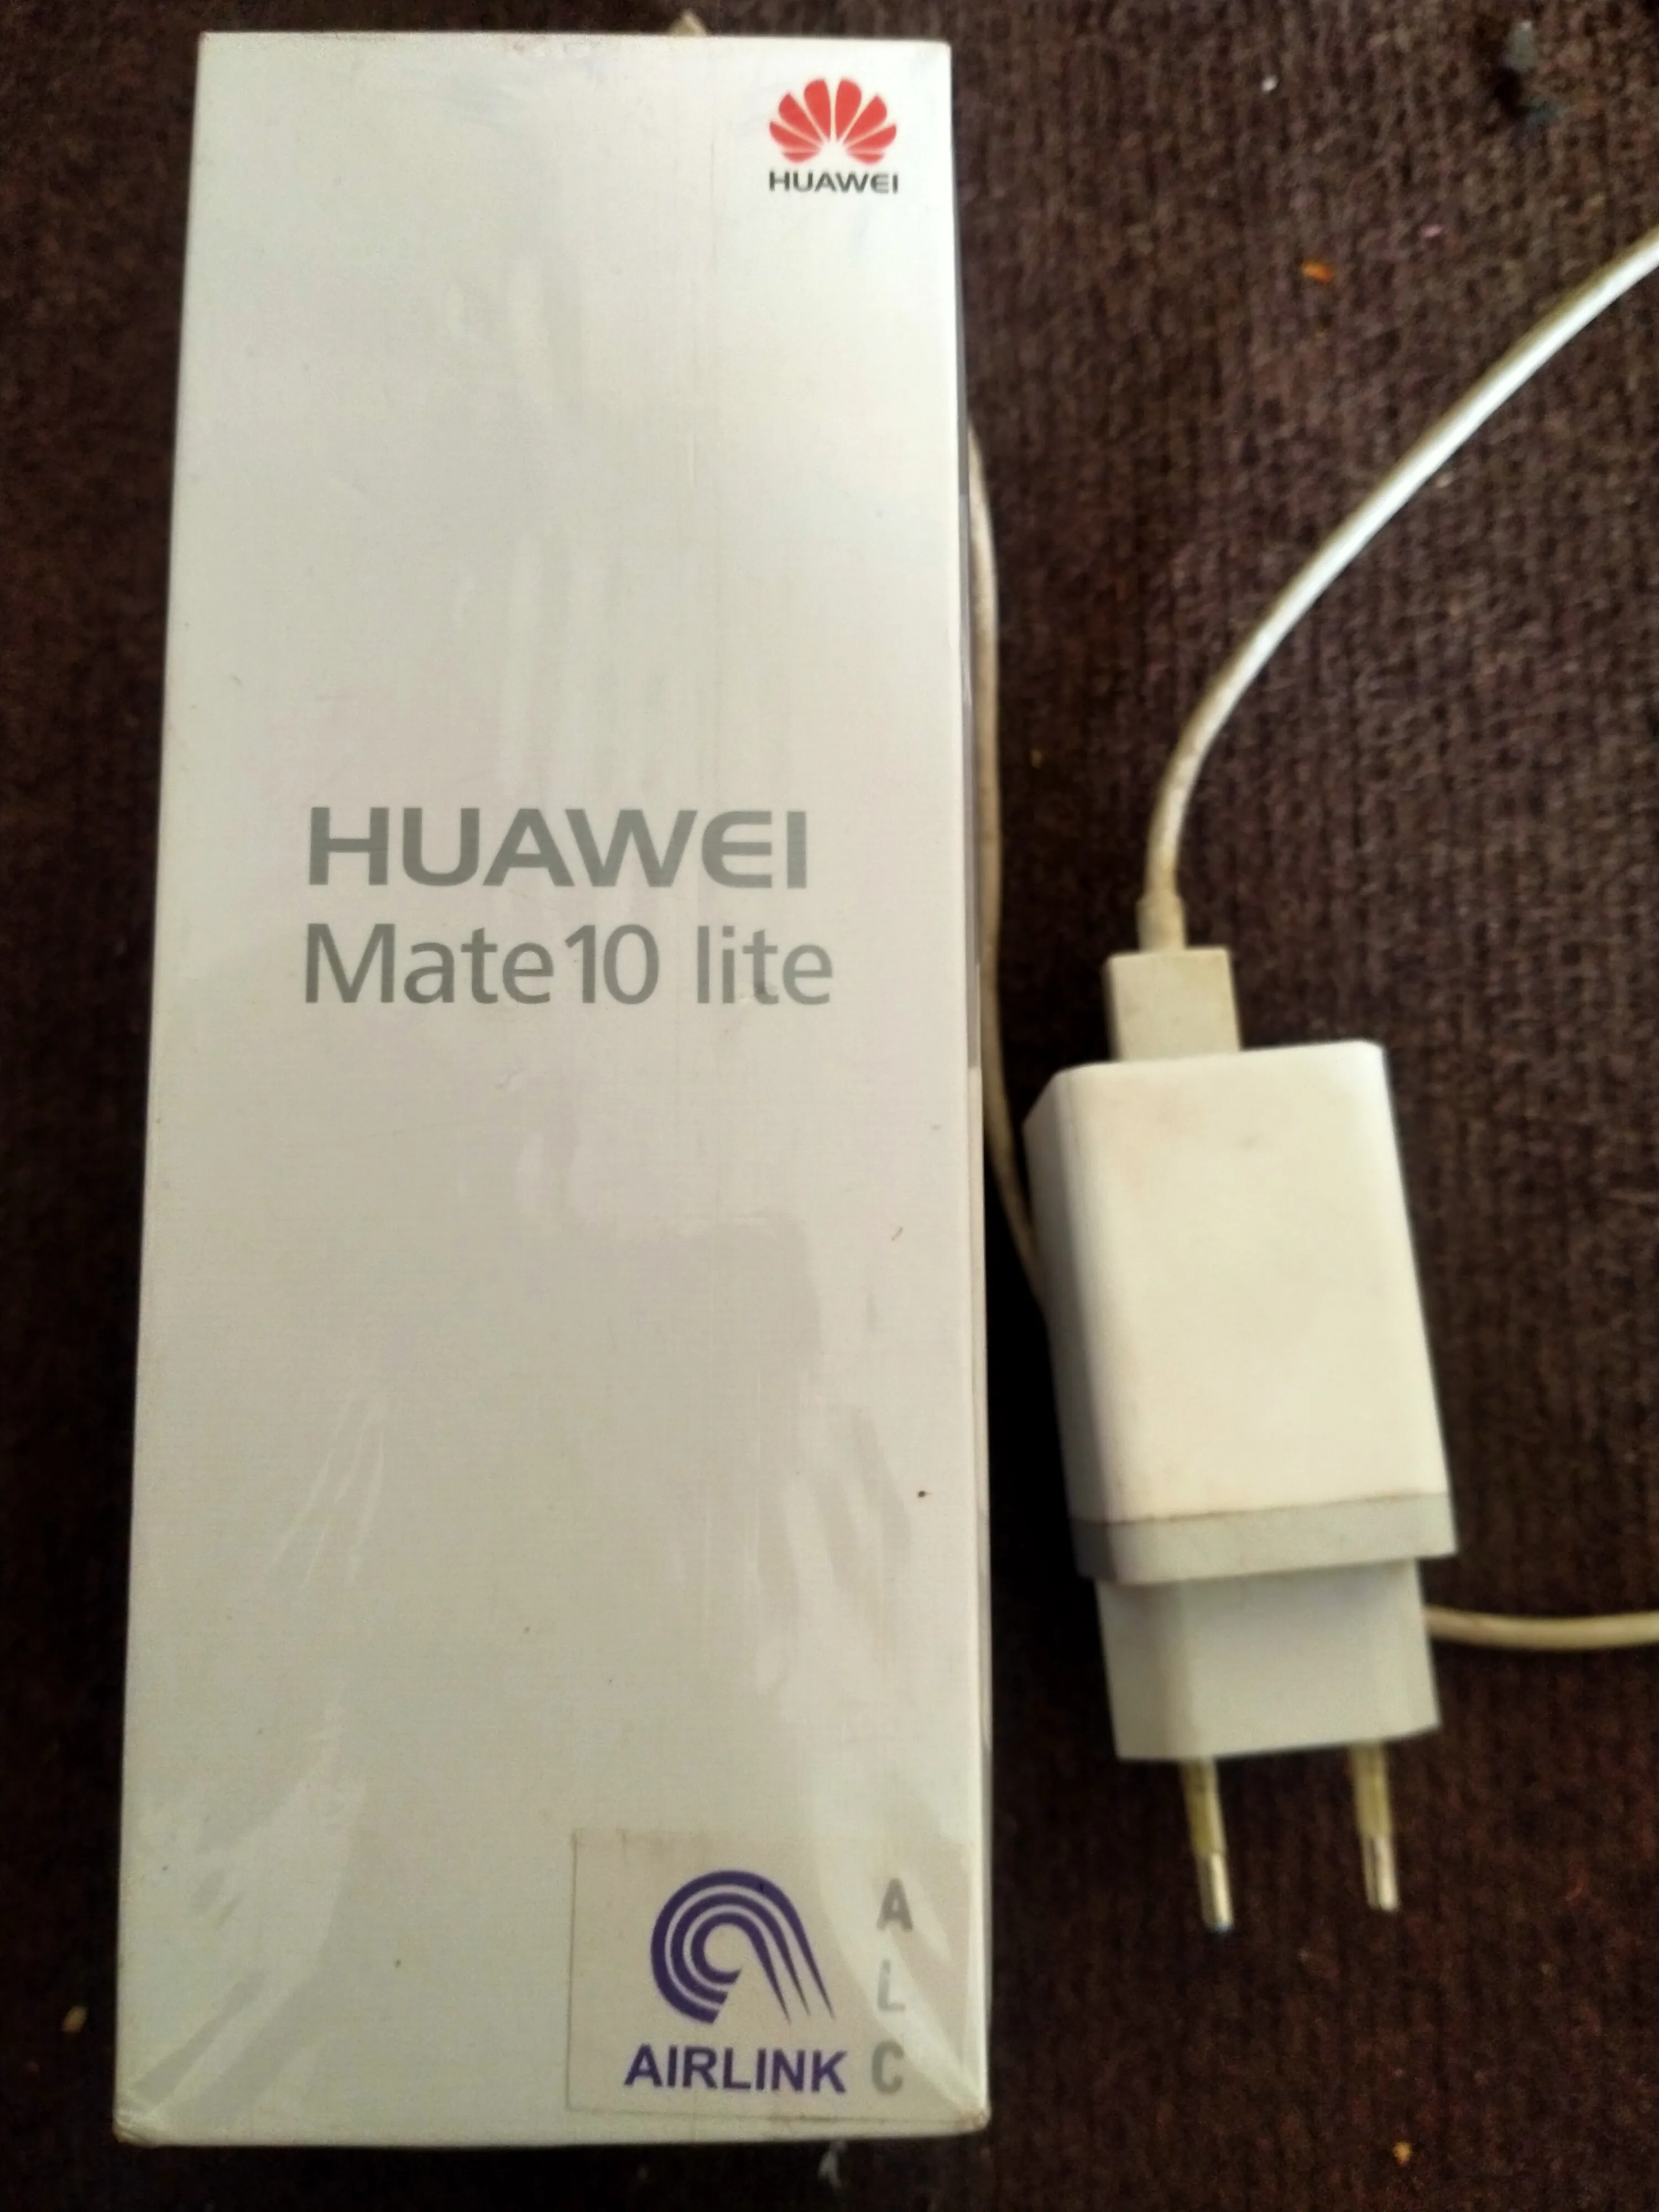 Huawei mate 10 lite - photo 1